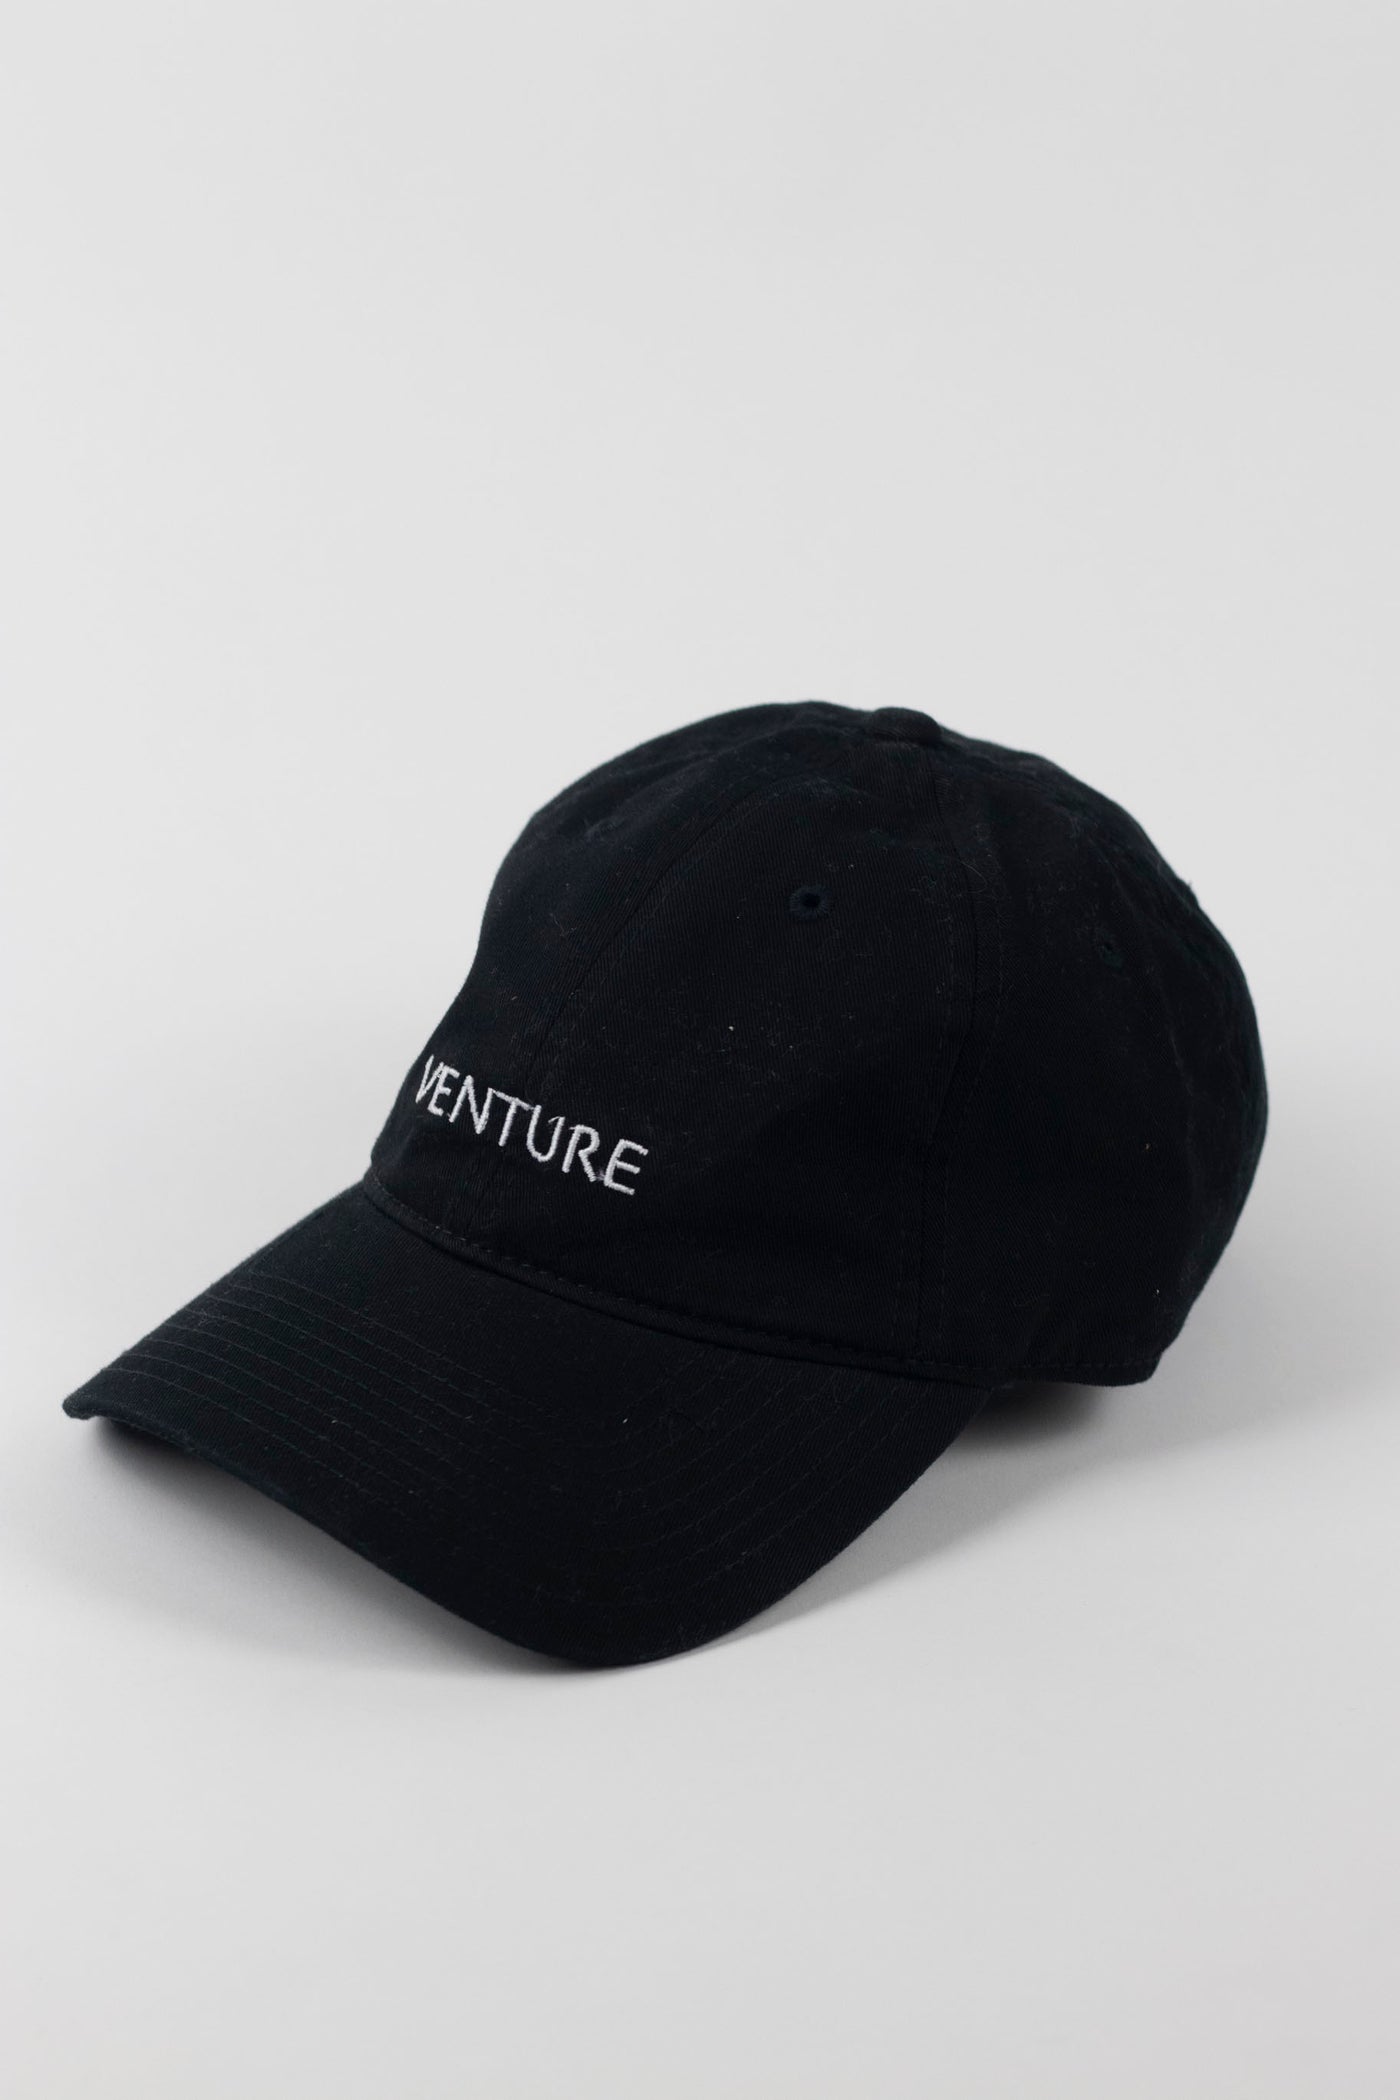 Venture Hat - Black